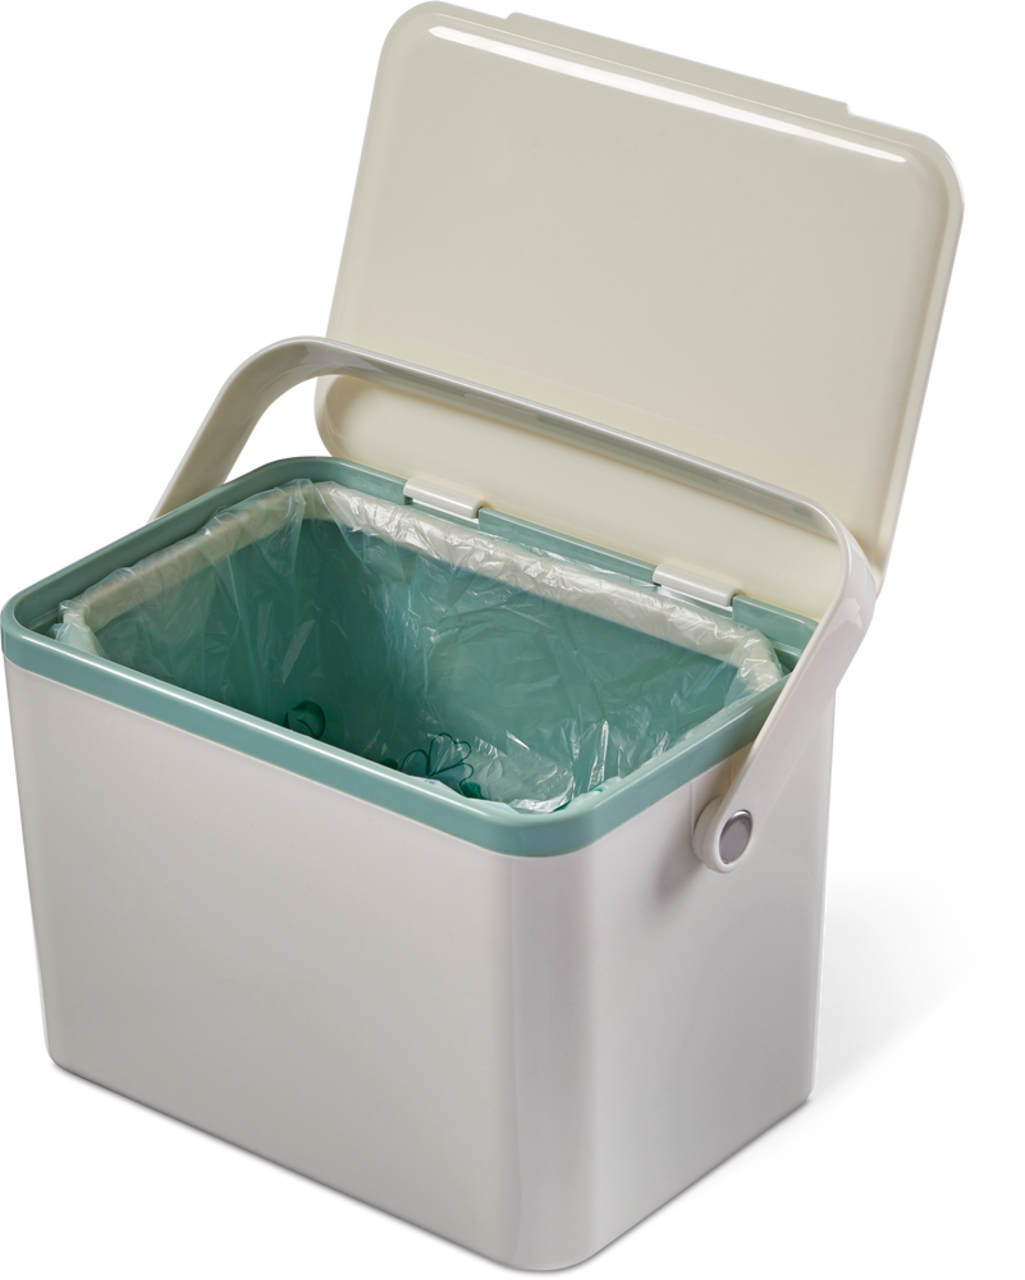 Poubelle à compostage rectangulaire en plastique Type A, blanc, 4 L